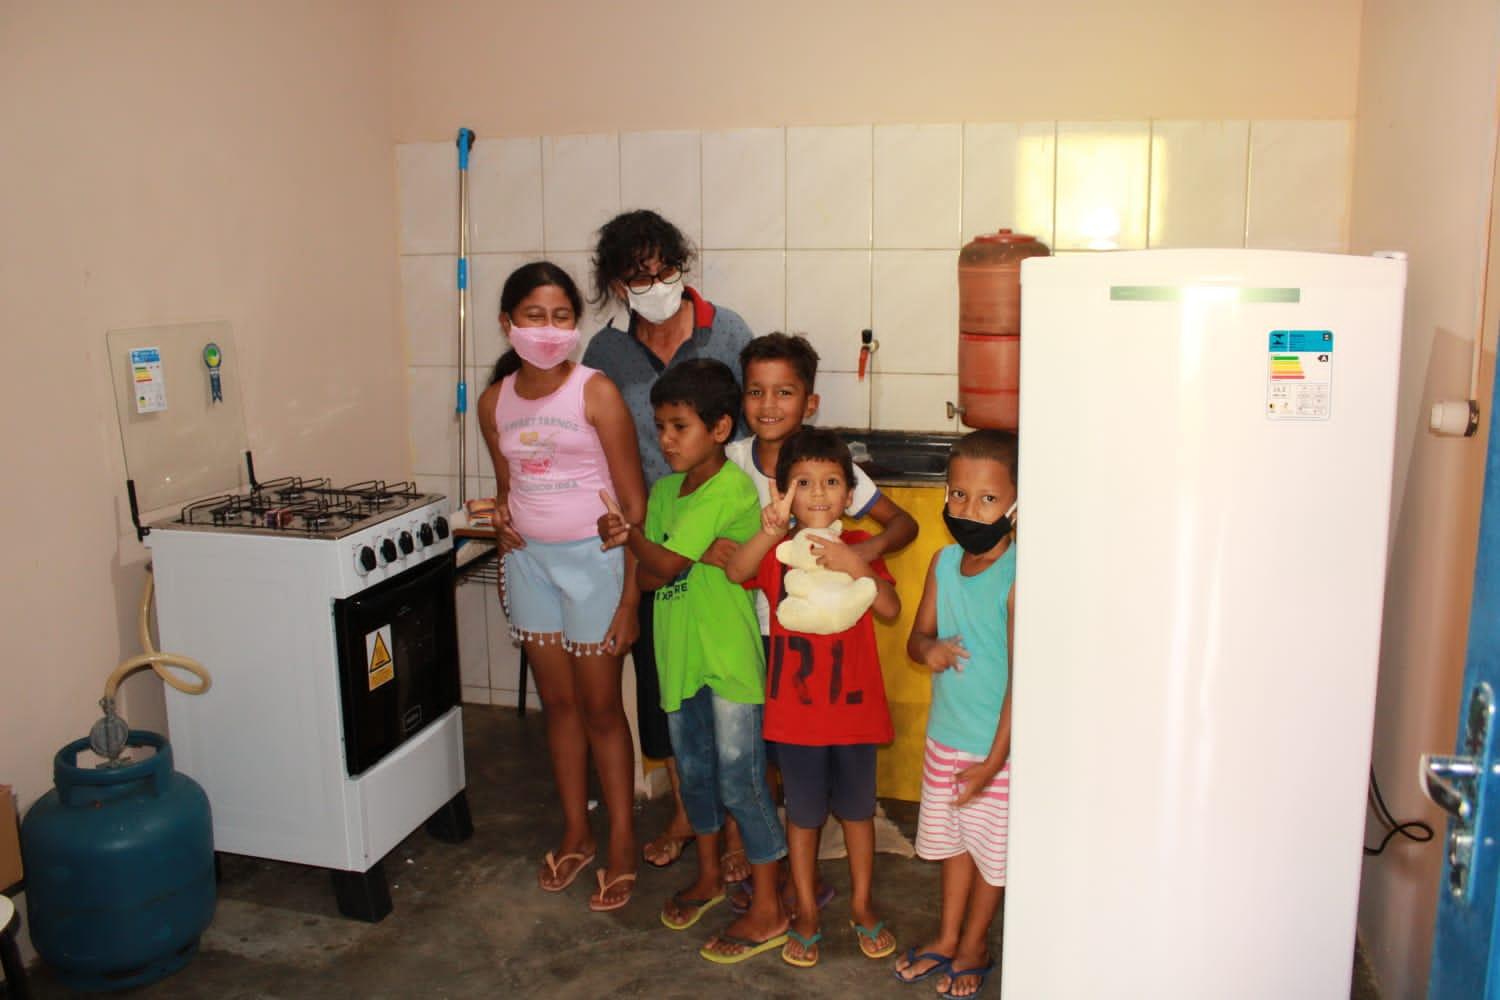 Prefeitura de Itanhém faz reforma e entrega geladeira e fogão novos em Escola da Comunidade Água Fria